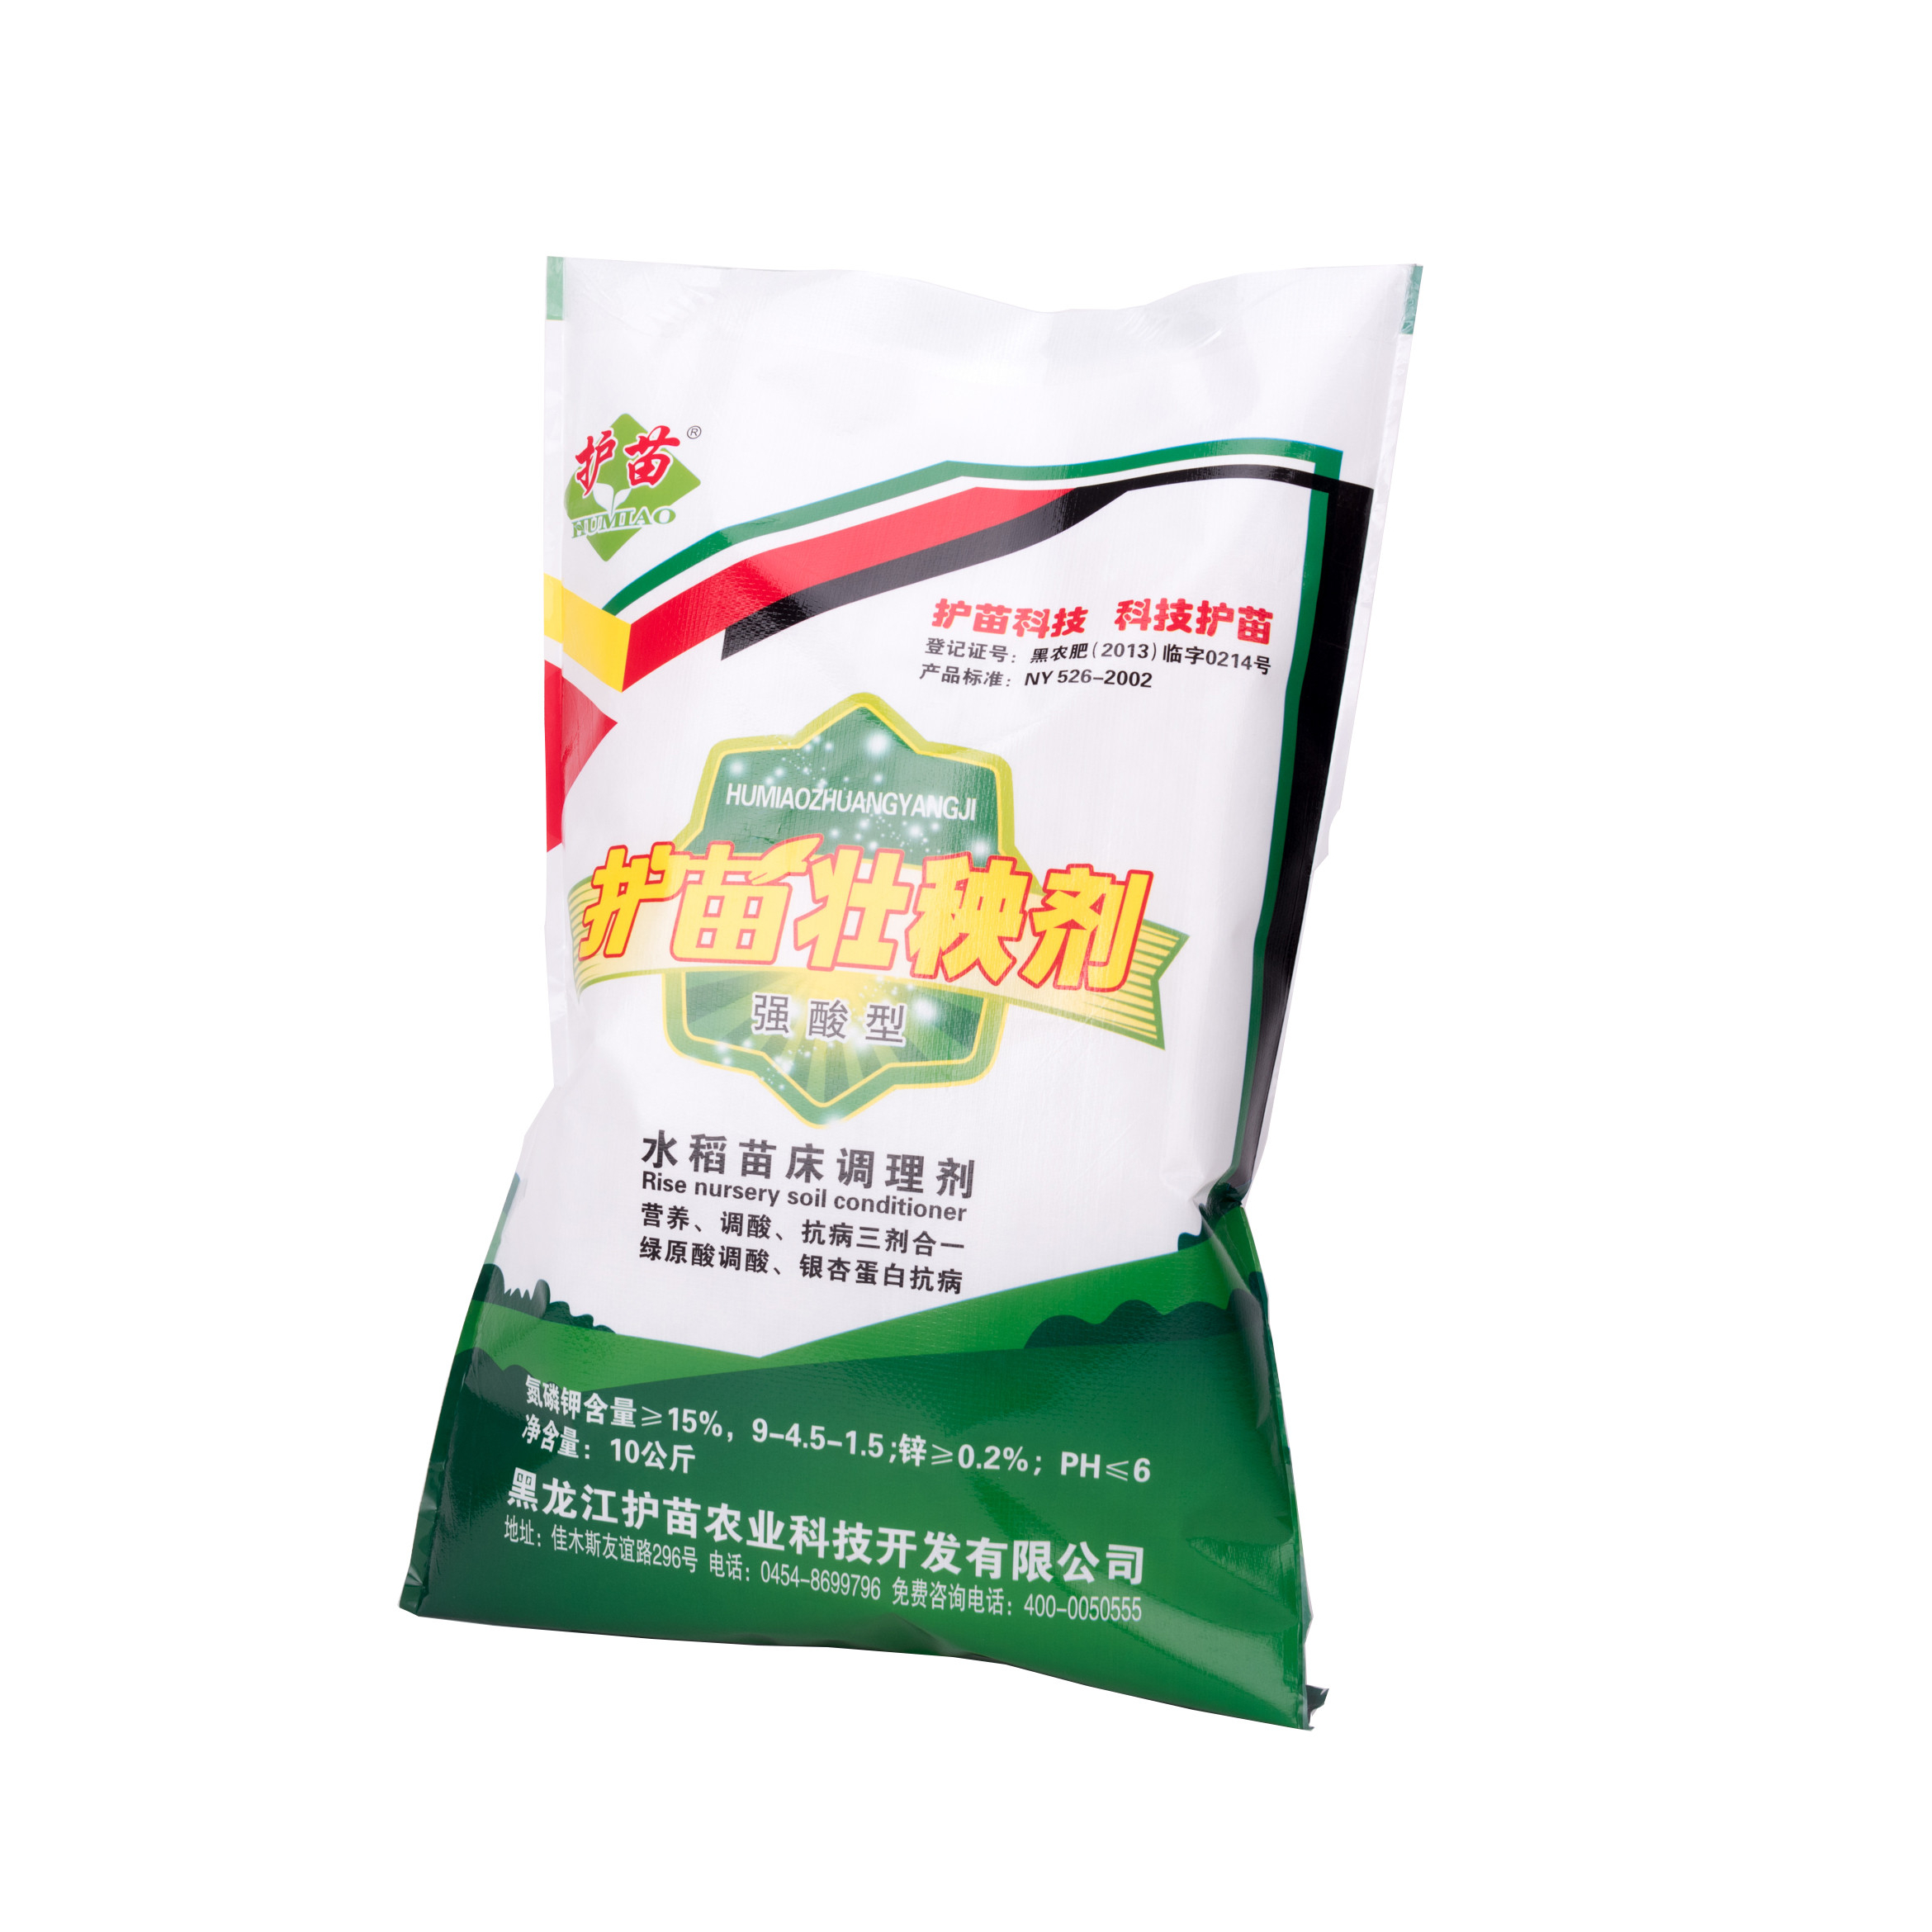 Пример упаковки удобрений для китайского рынка. Источник: alibaba.com